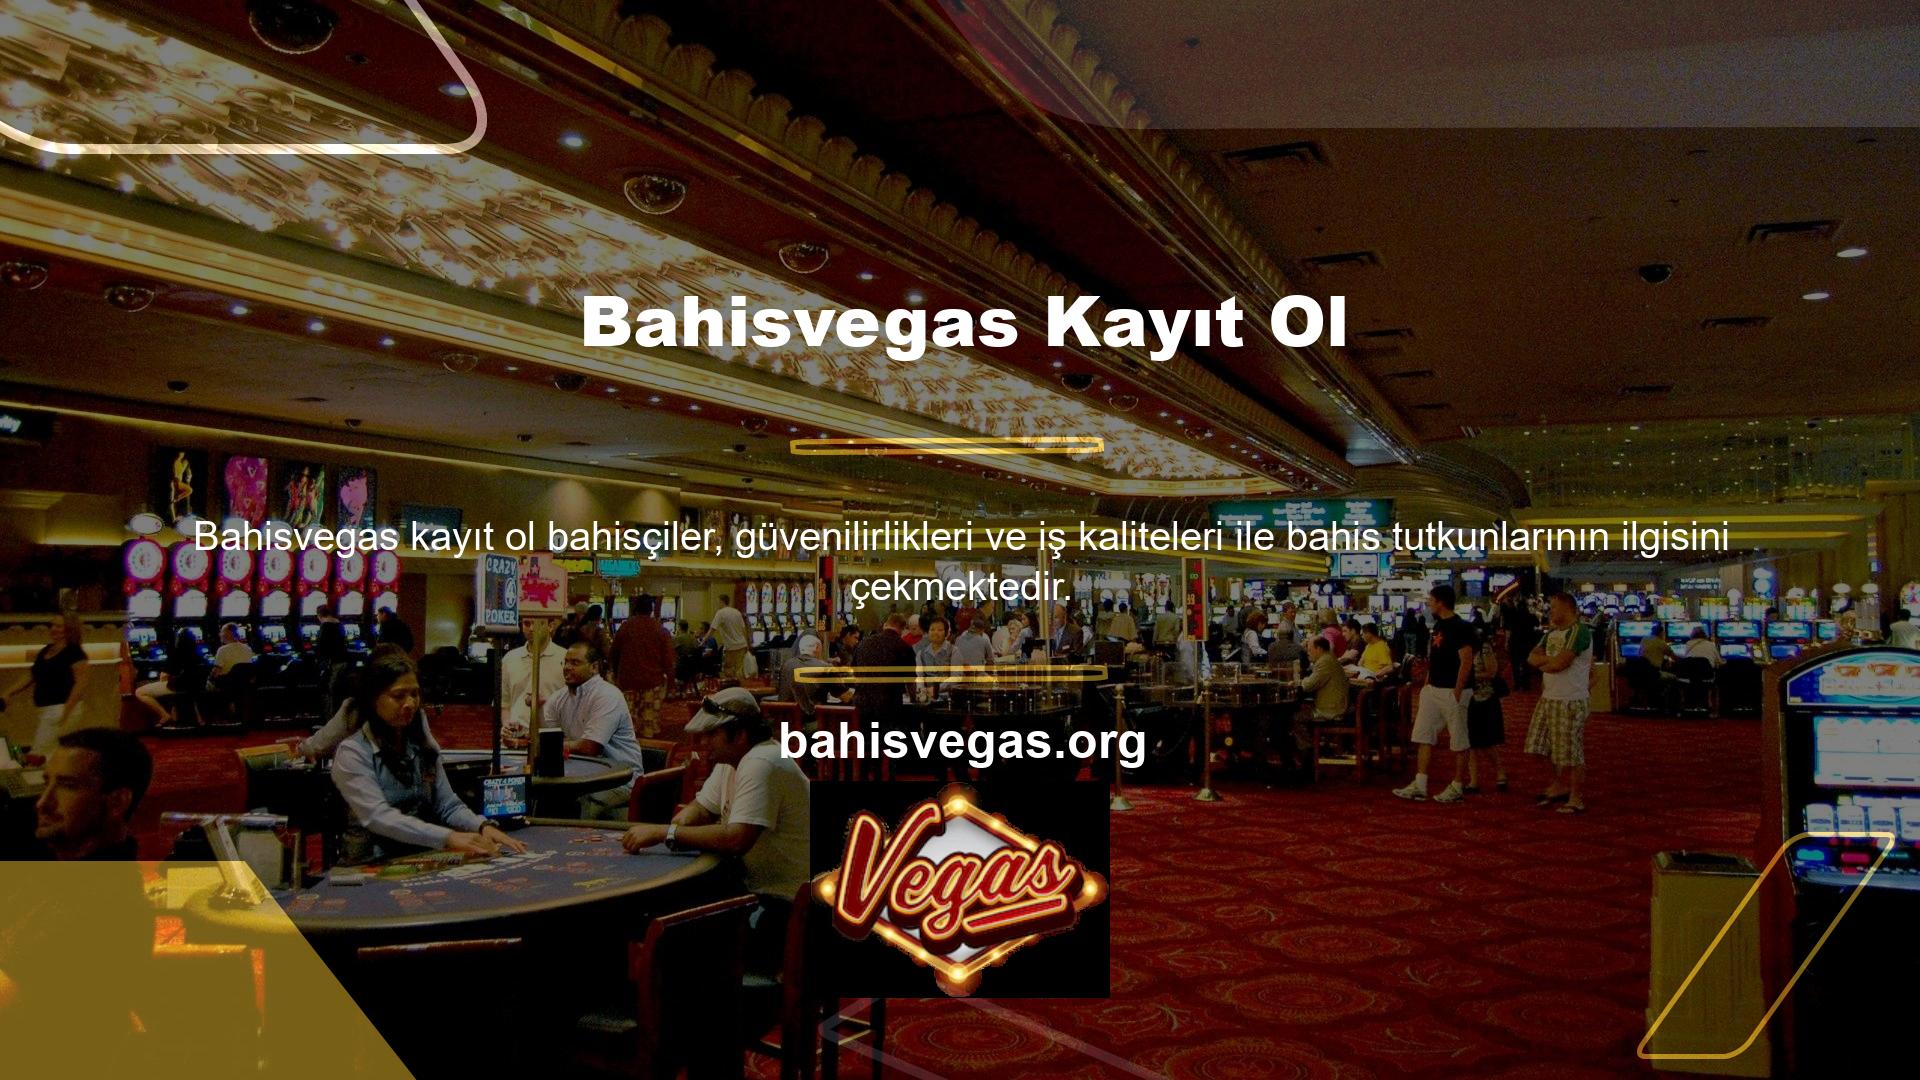 Bahisvegas Connect çok popüler bir site olduğunu kanıtladı